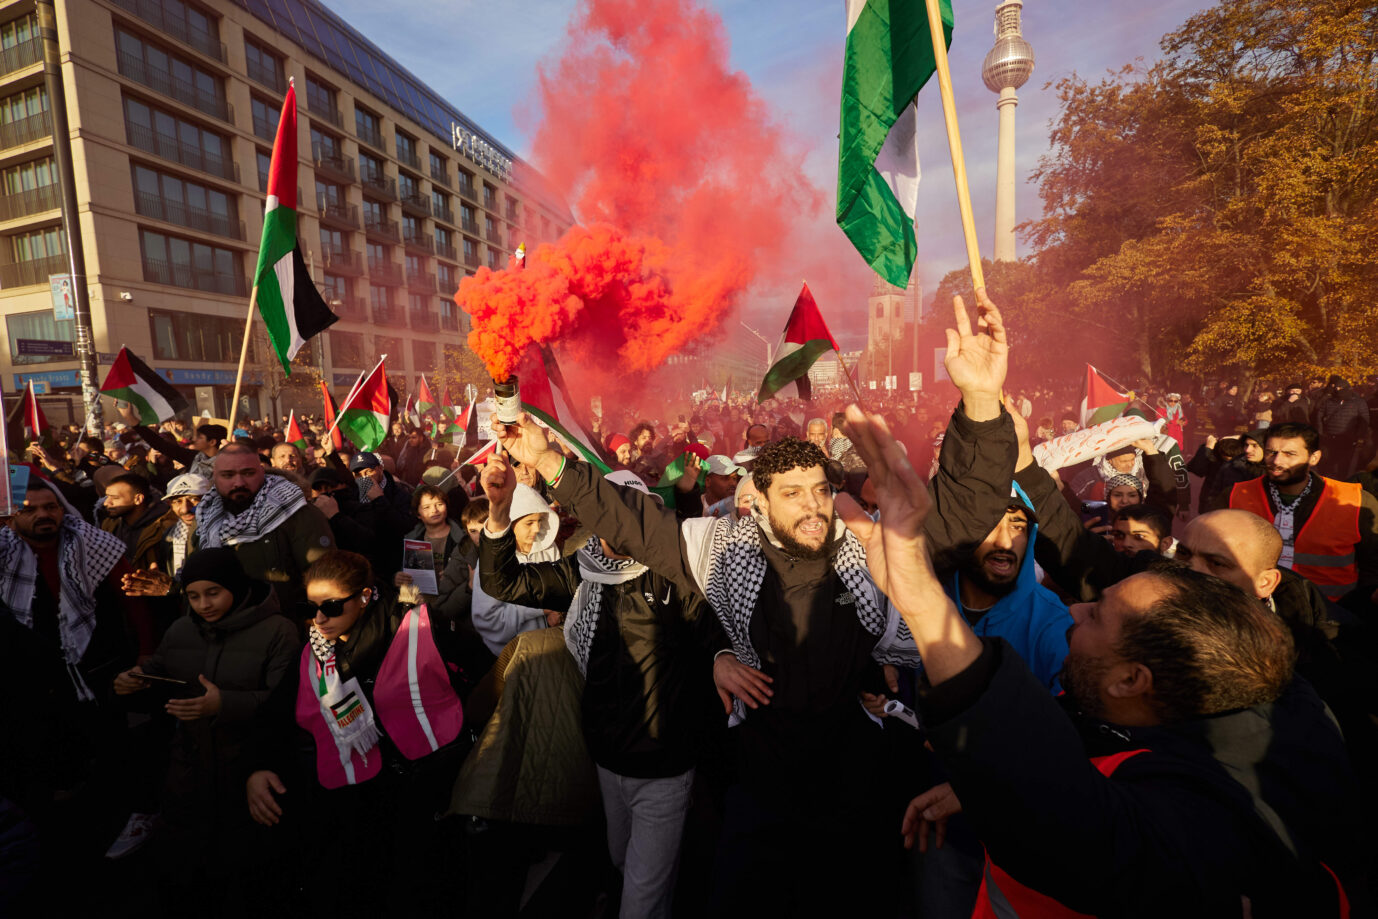 Viele Straftaten bei Demos. Teilnehmer einer Pro-Palästina-Kundgebung auf der Straße Unter den Linden zünden Pyrotechnik.